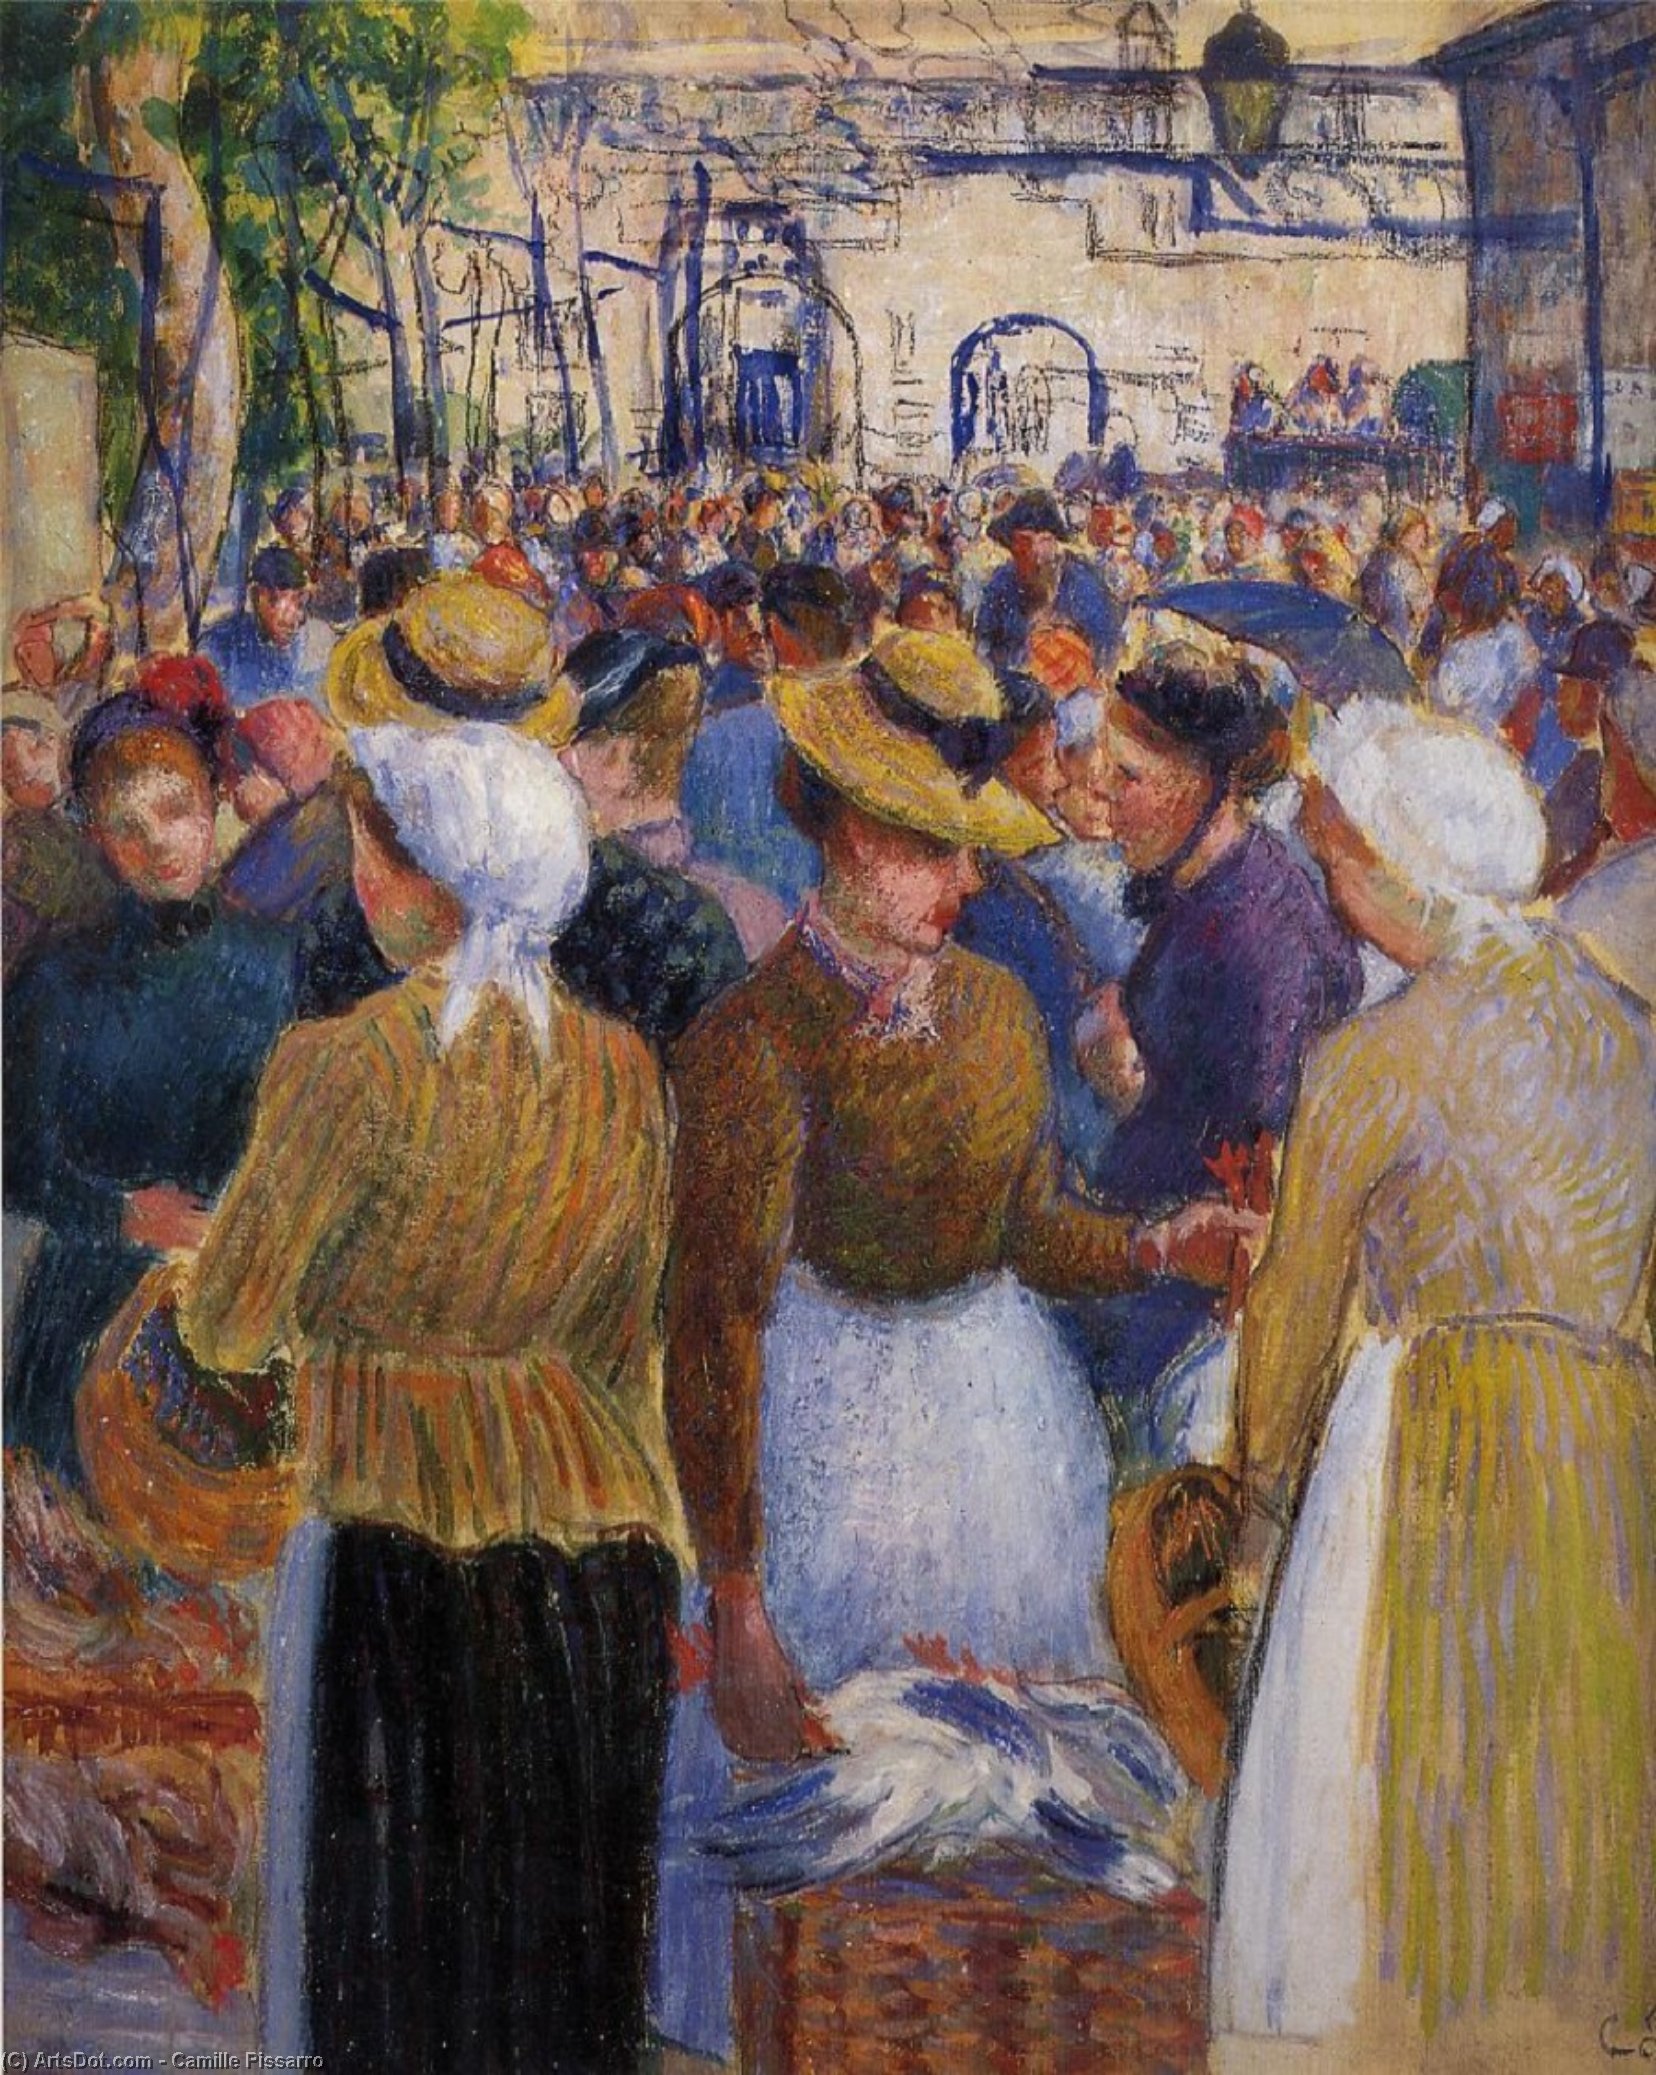 WikiOO.org - Güzel Sanatlar Ansiklopedisi - Resim, Resimler Camille Pissarro - Poultry Market at Gisors